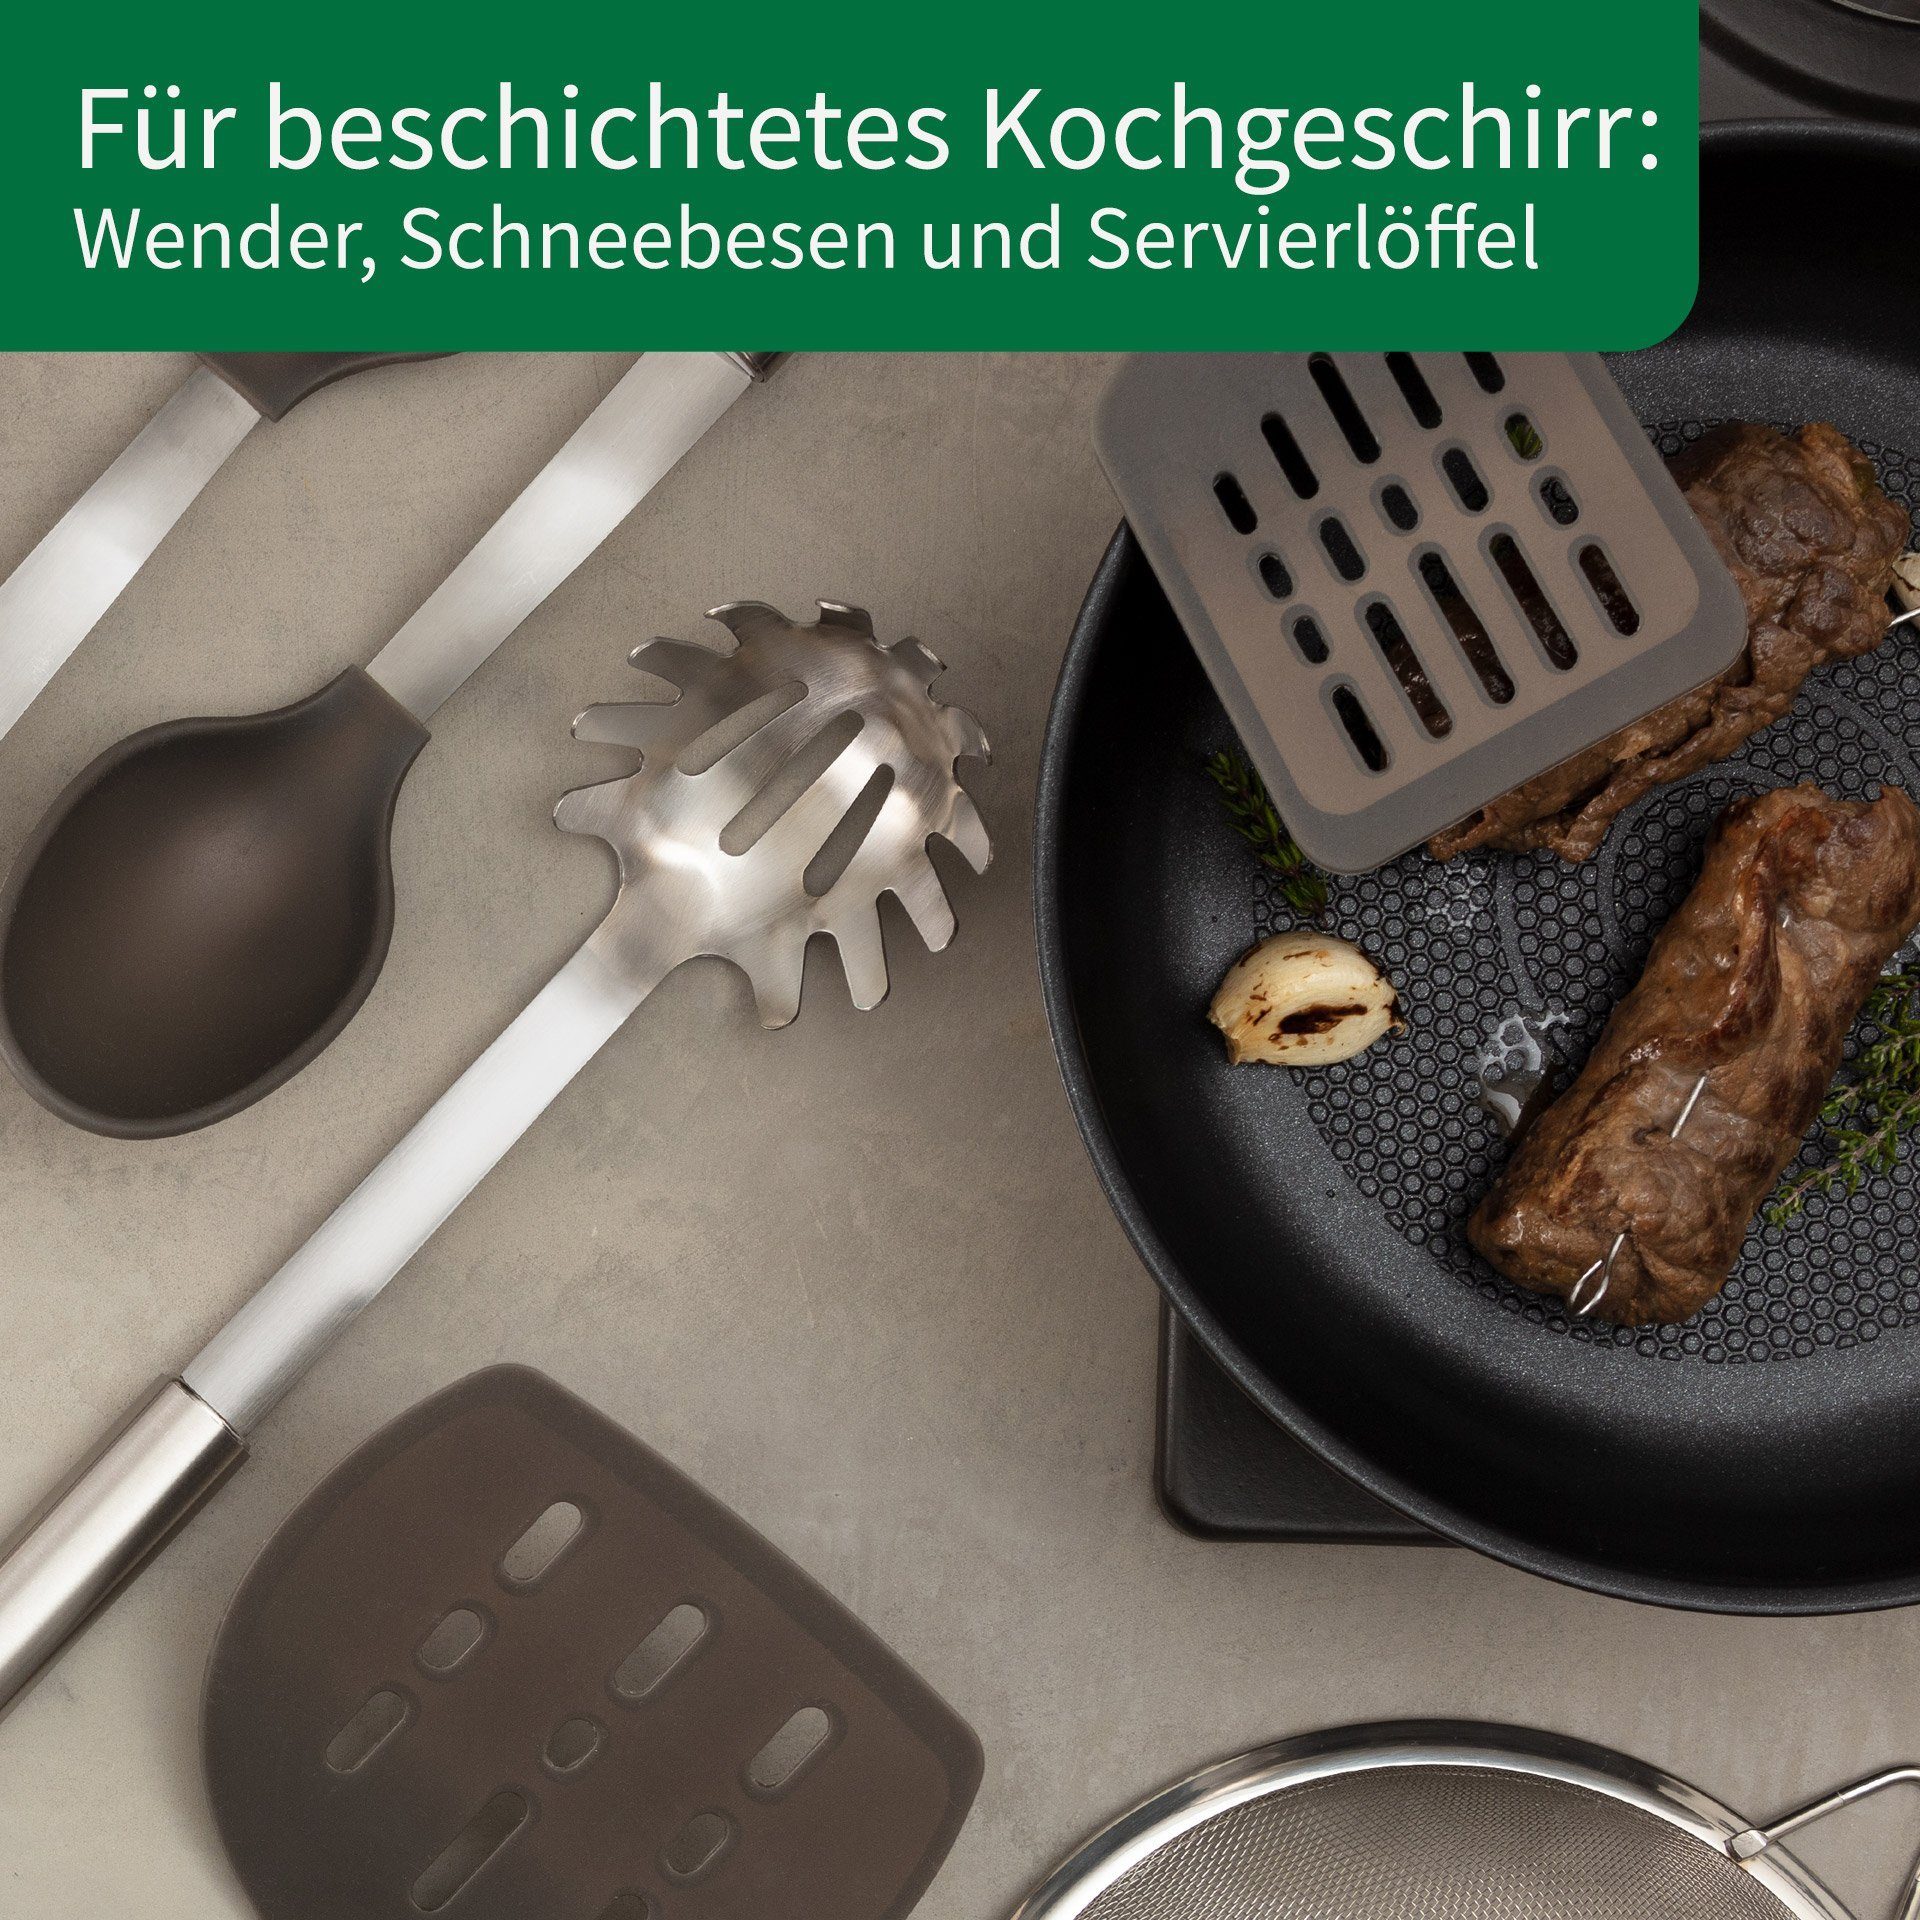 Kochbesteck-Set Fackelmann Chefkoch München trifft